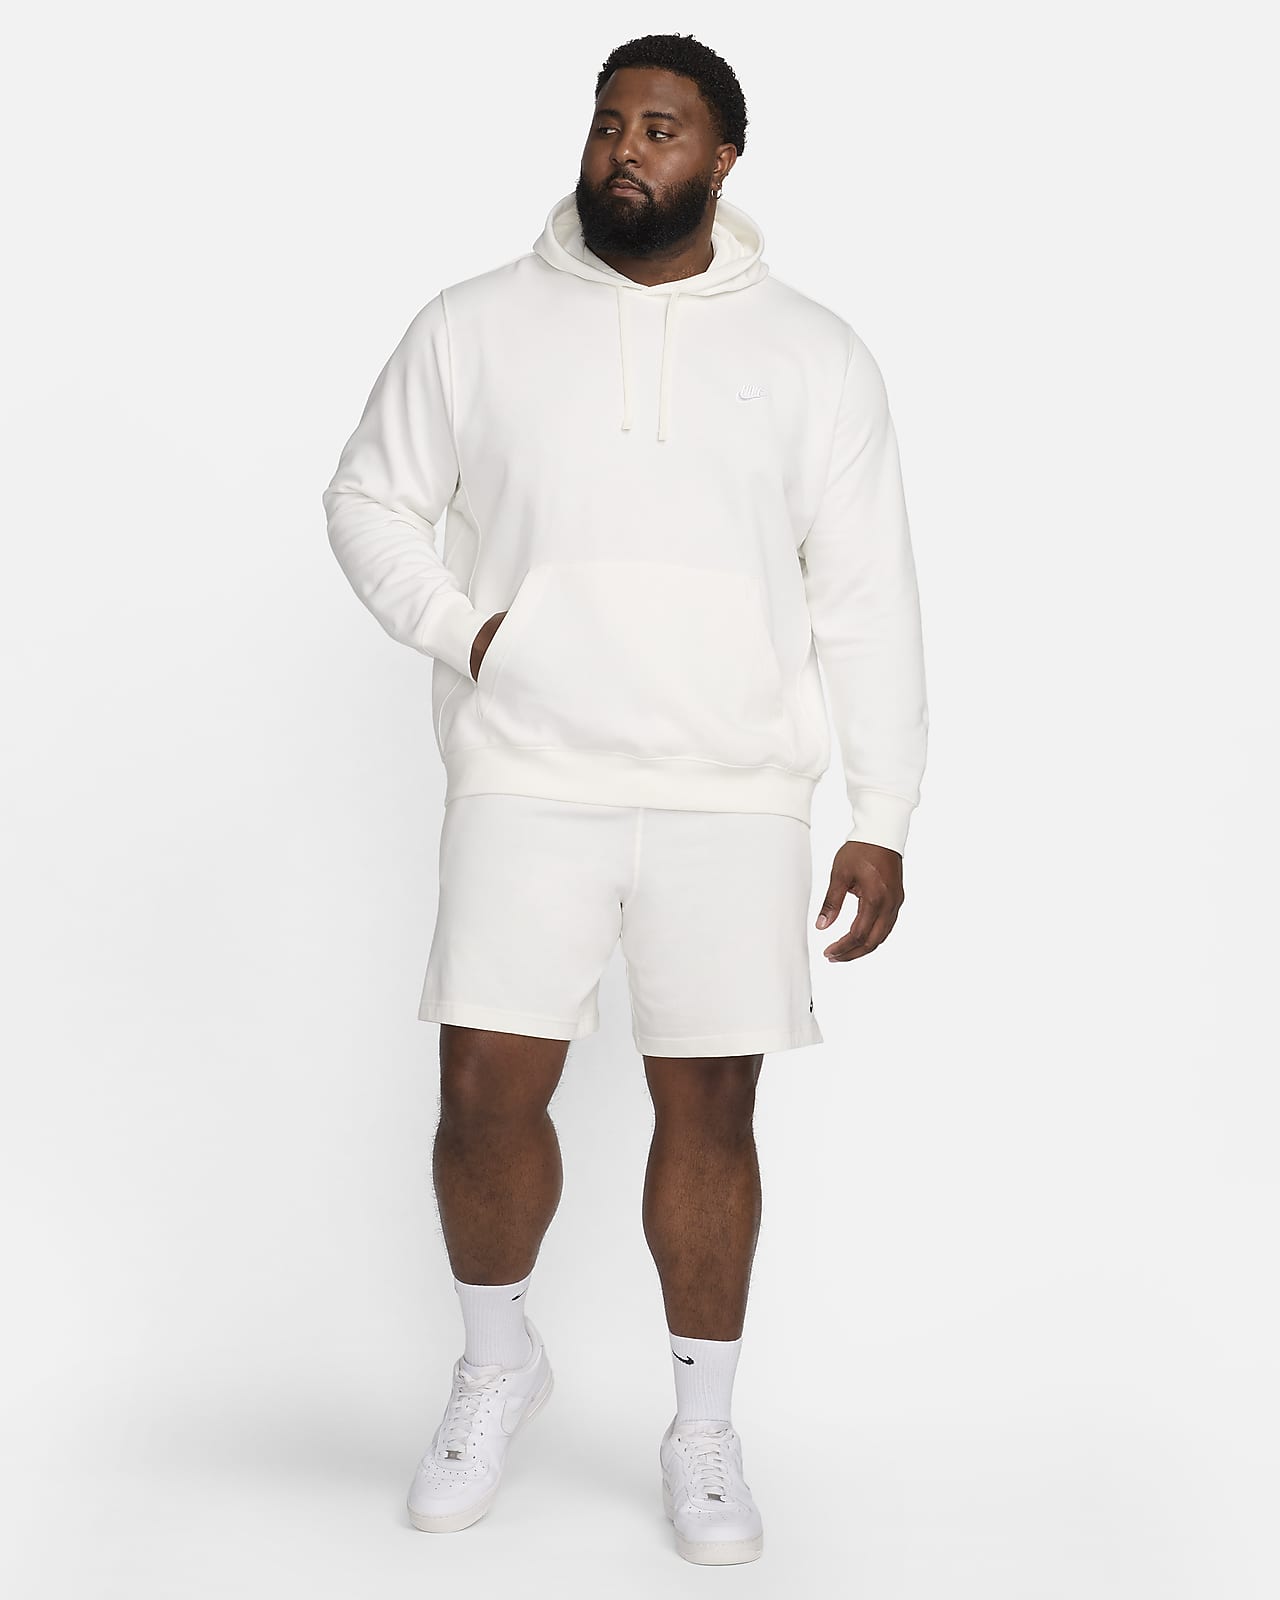 Men's Nike Sportswear Club Fleece Pullover Hoodie- Size L